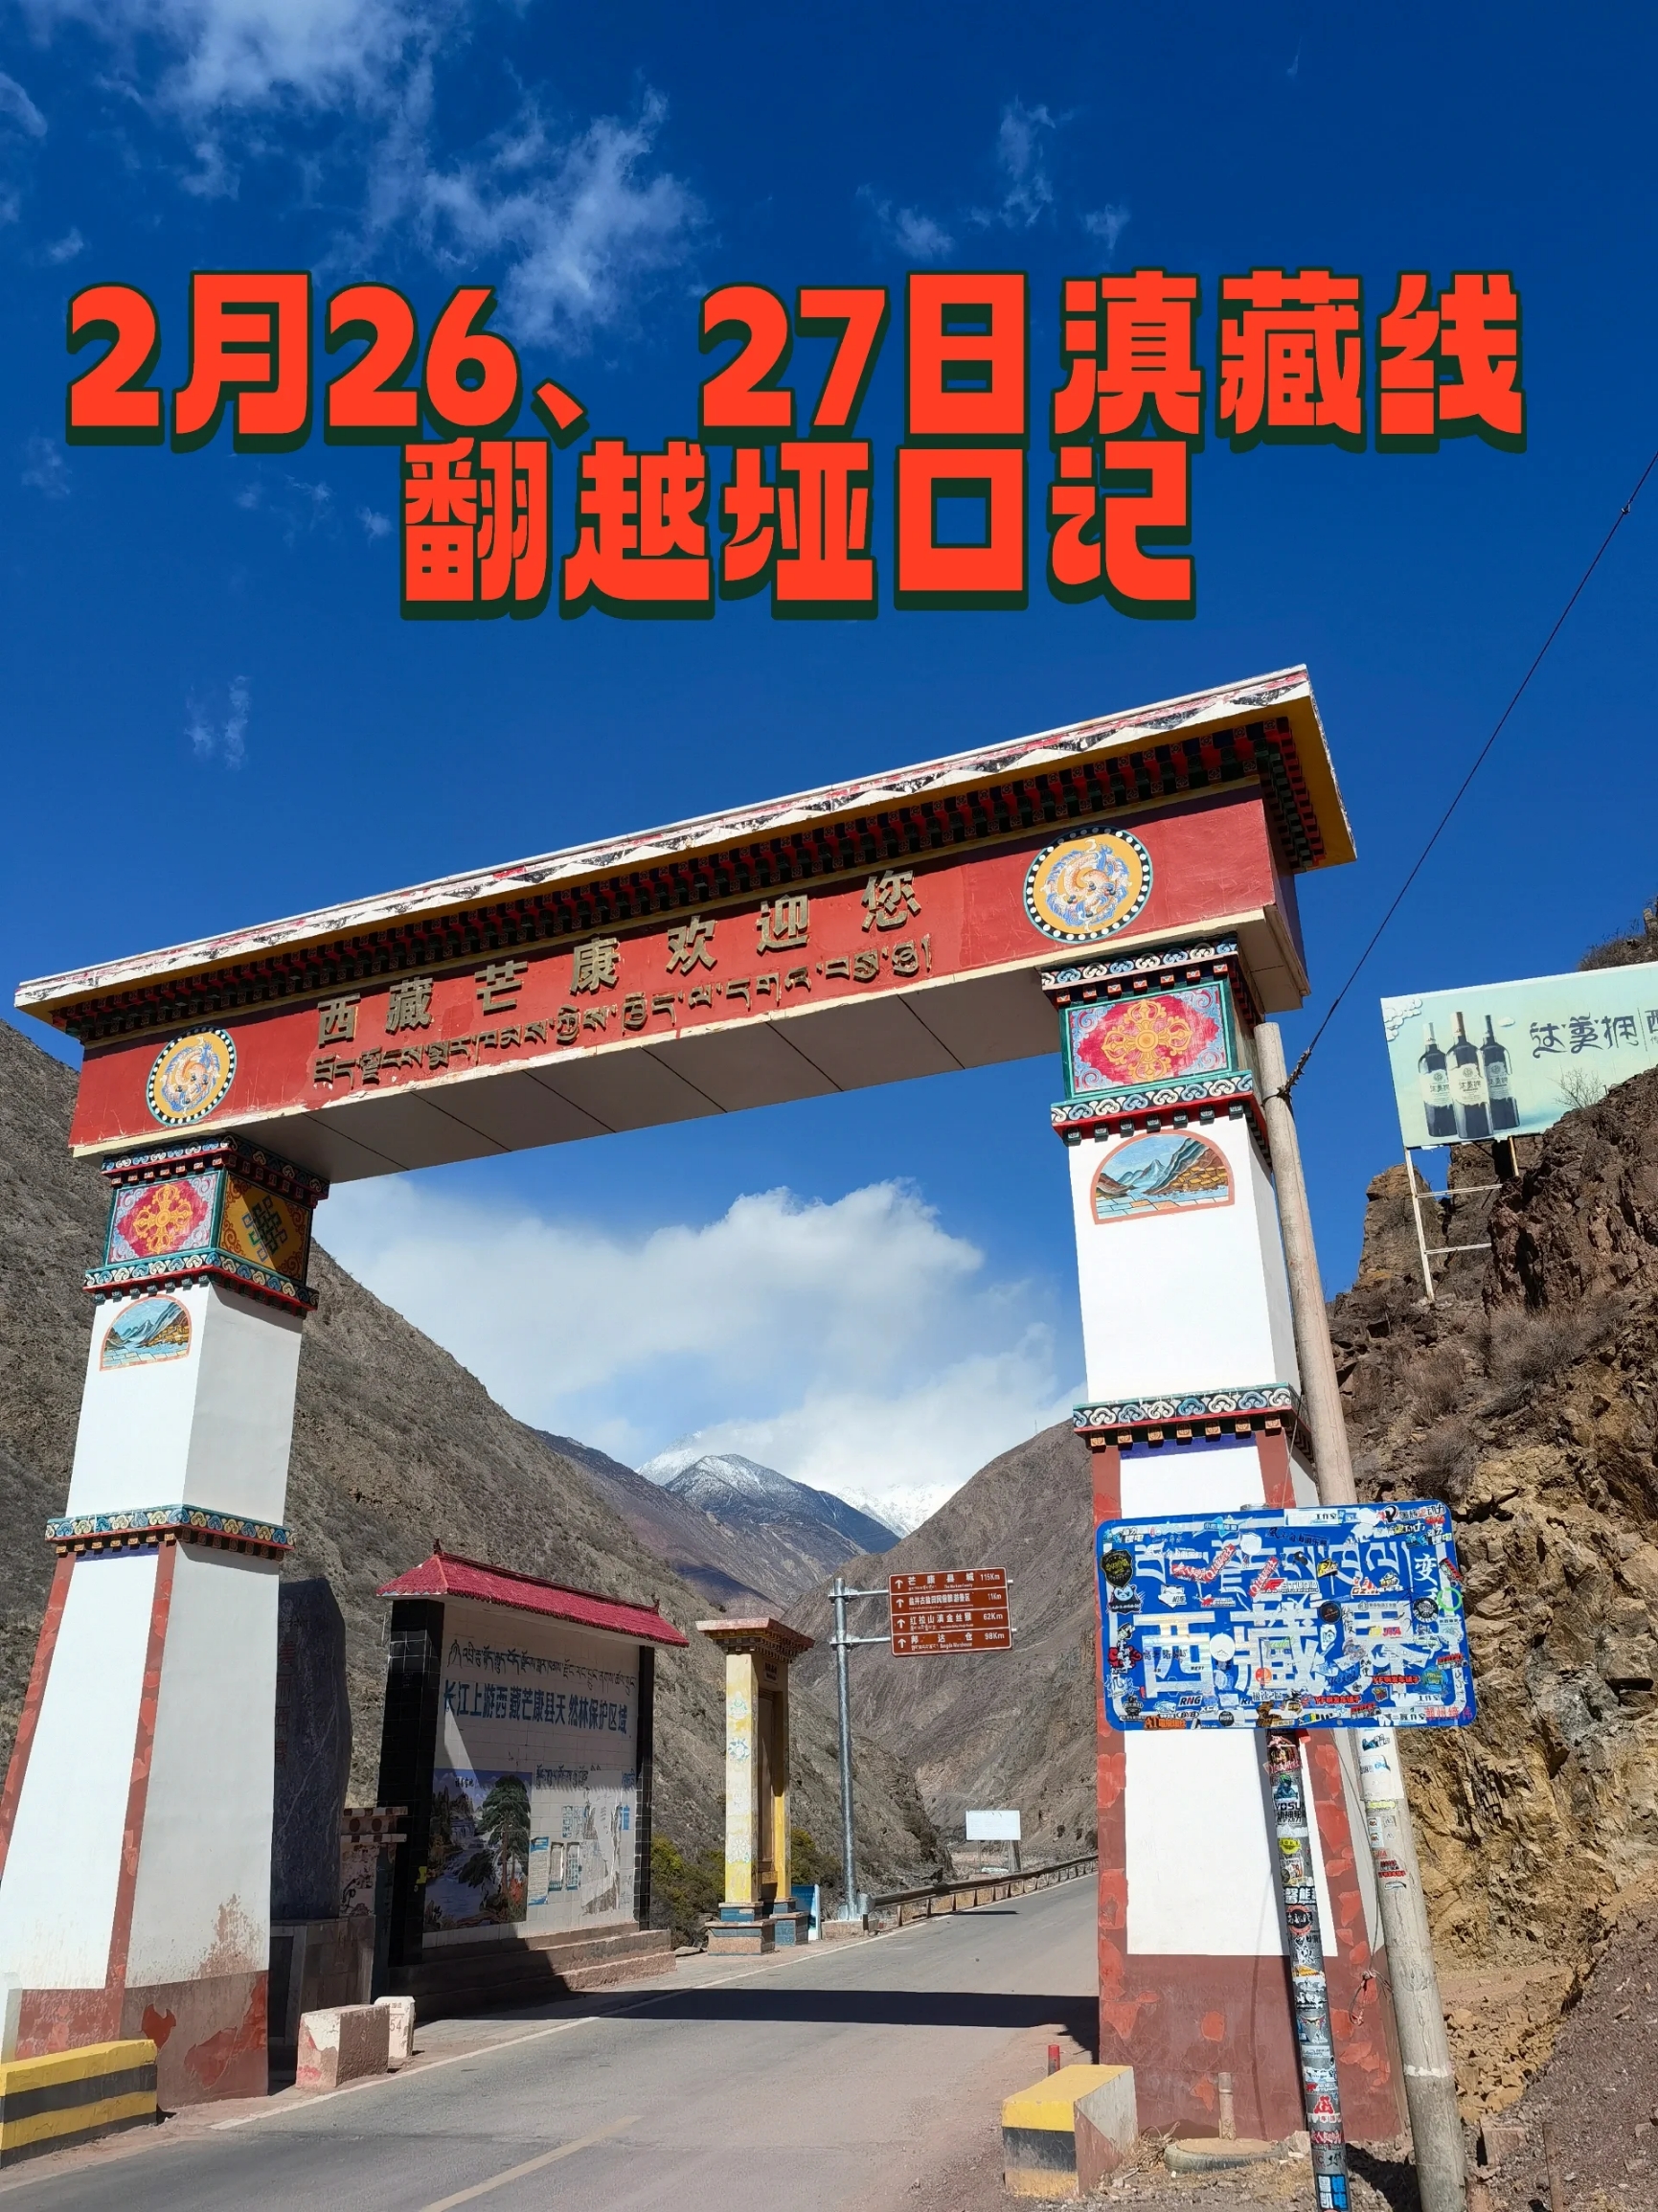 滇藏自驾行2.26、27翻越高山垭口记 沿214国道北上在西藏芒康汇入318国道,一路 翻山越岭，溯